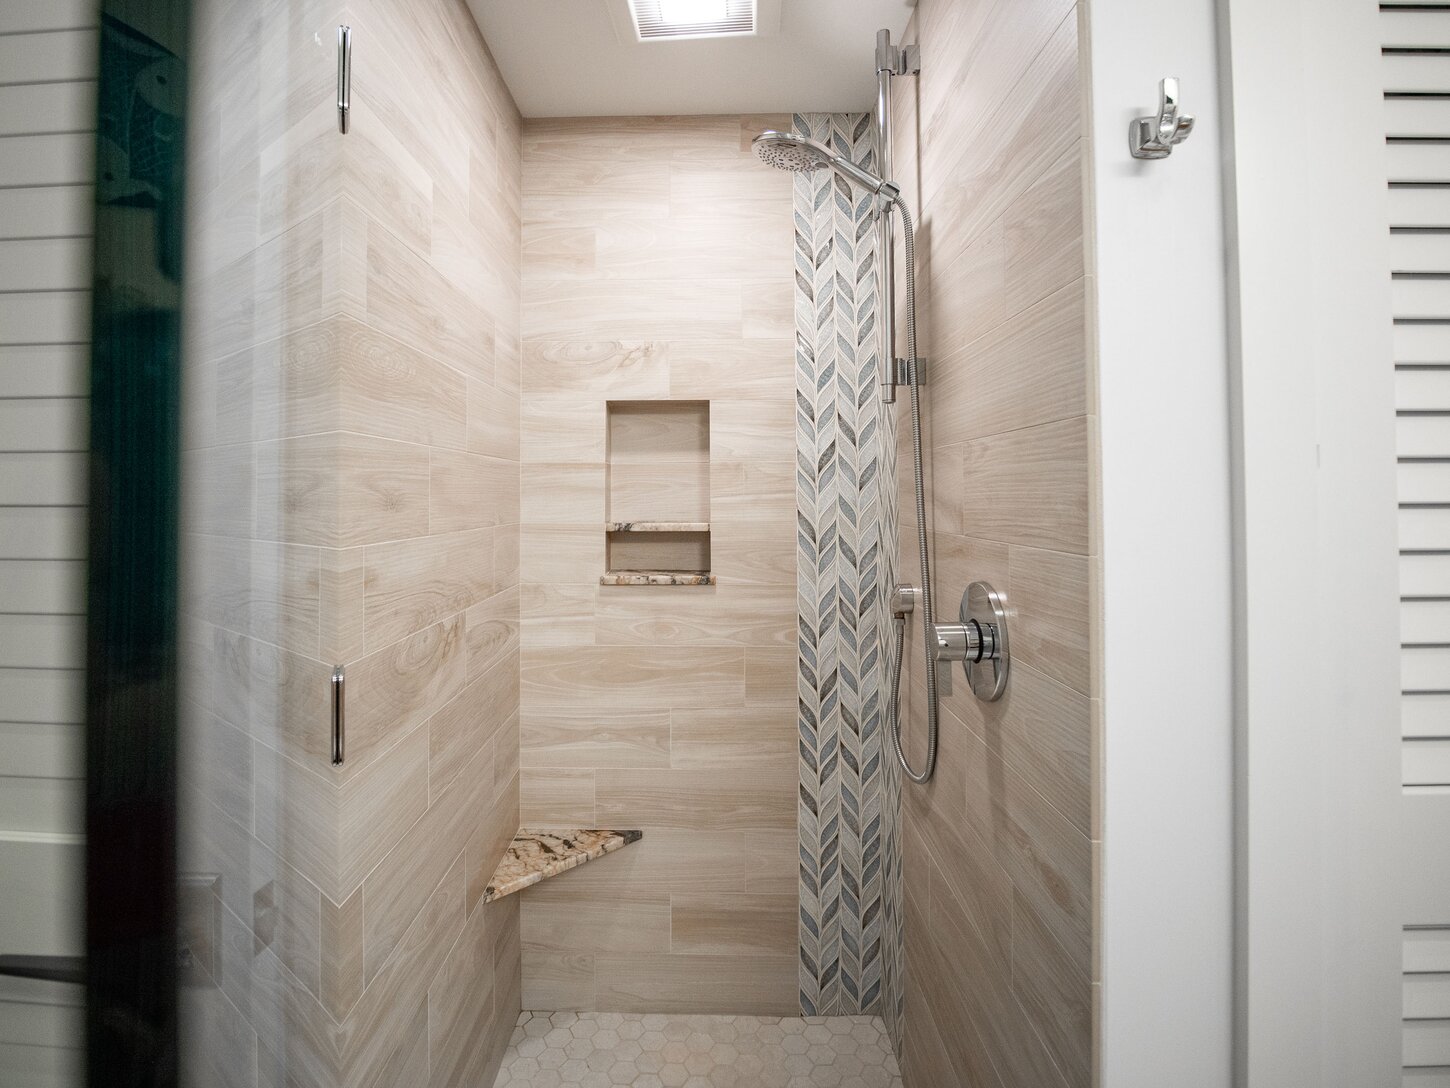 Guest bathroom shower features Hansgrohe fixtures